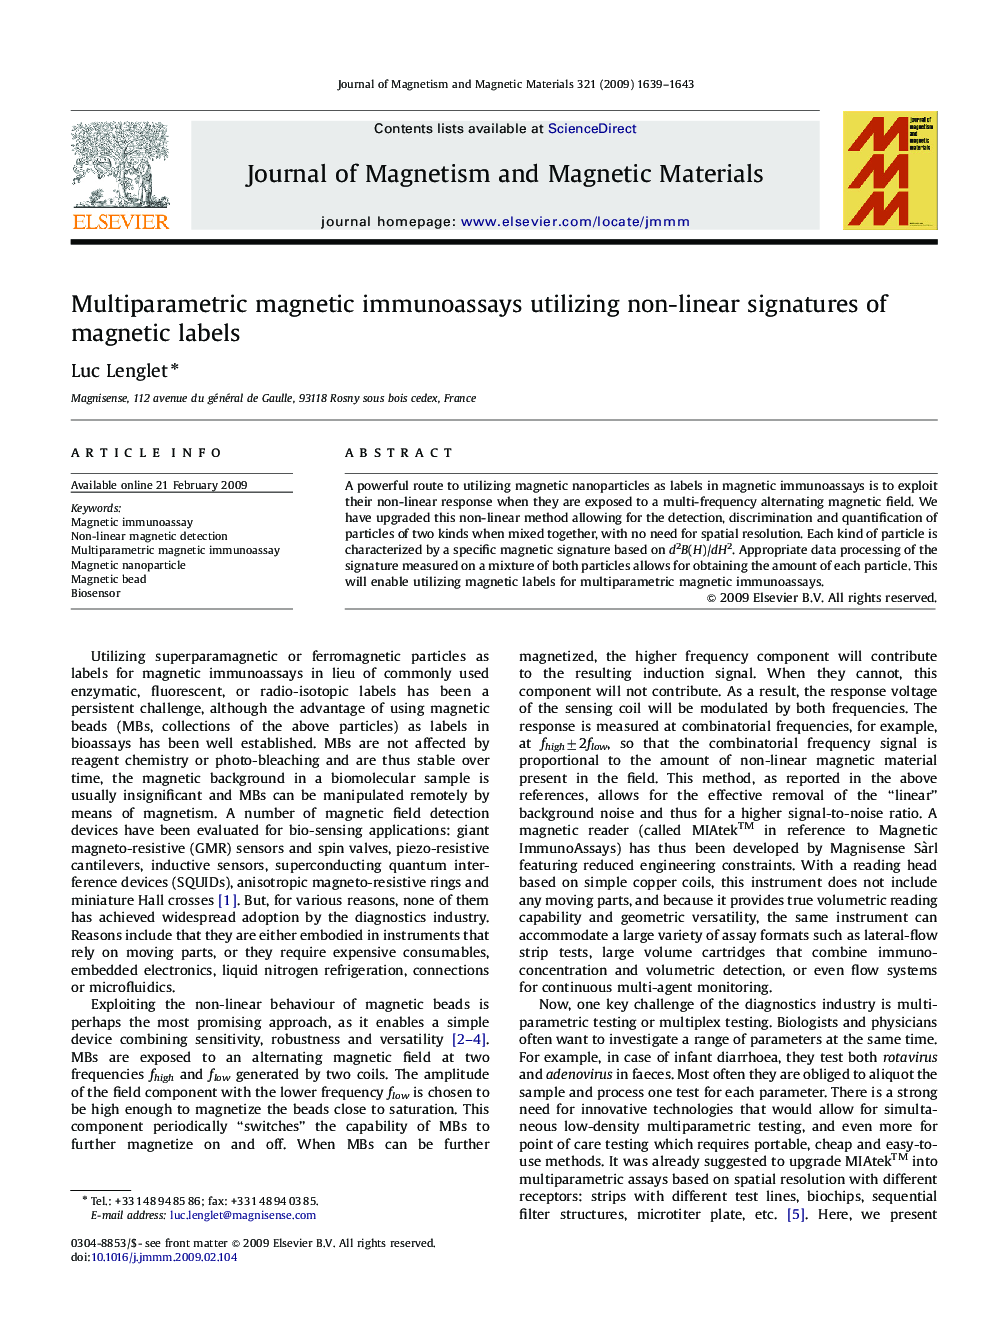 Multiparametric magnetic immunoassays utilizing non-linear signatures of magnetic labels